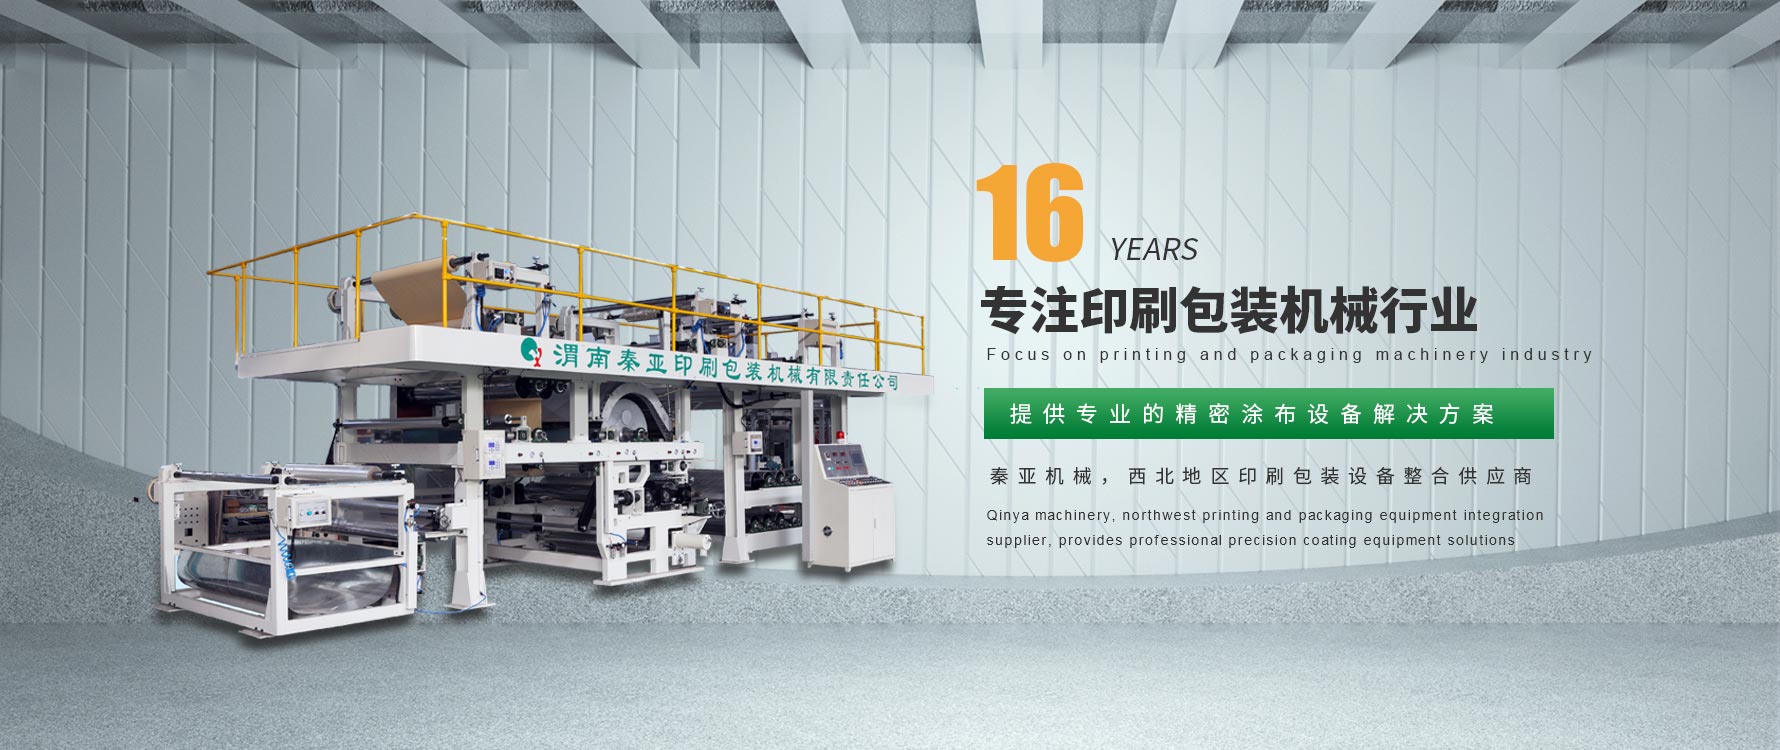 上海印刷设备